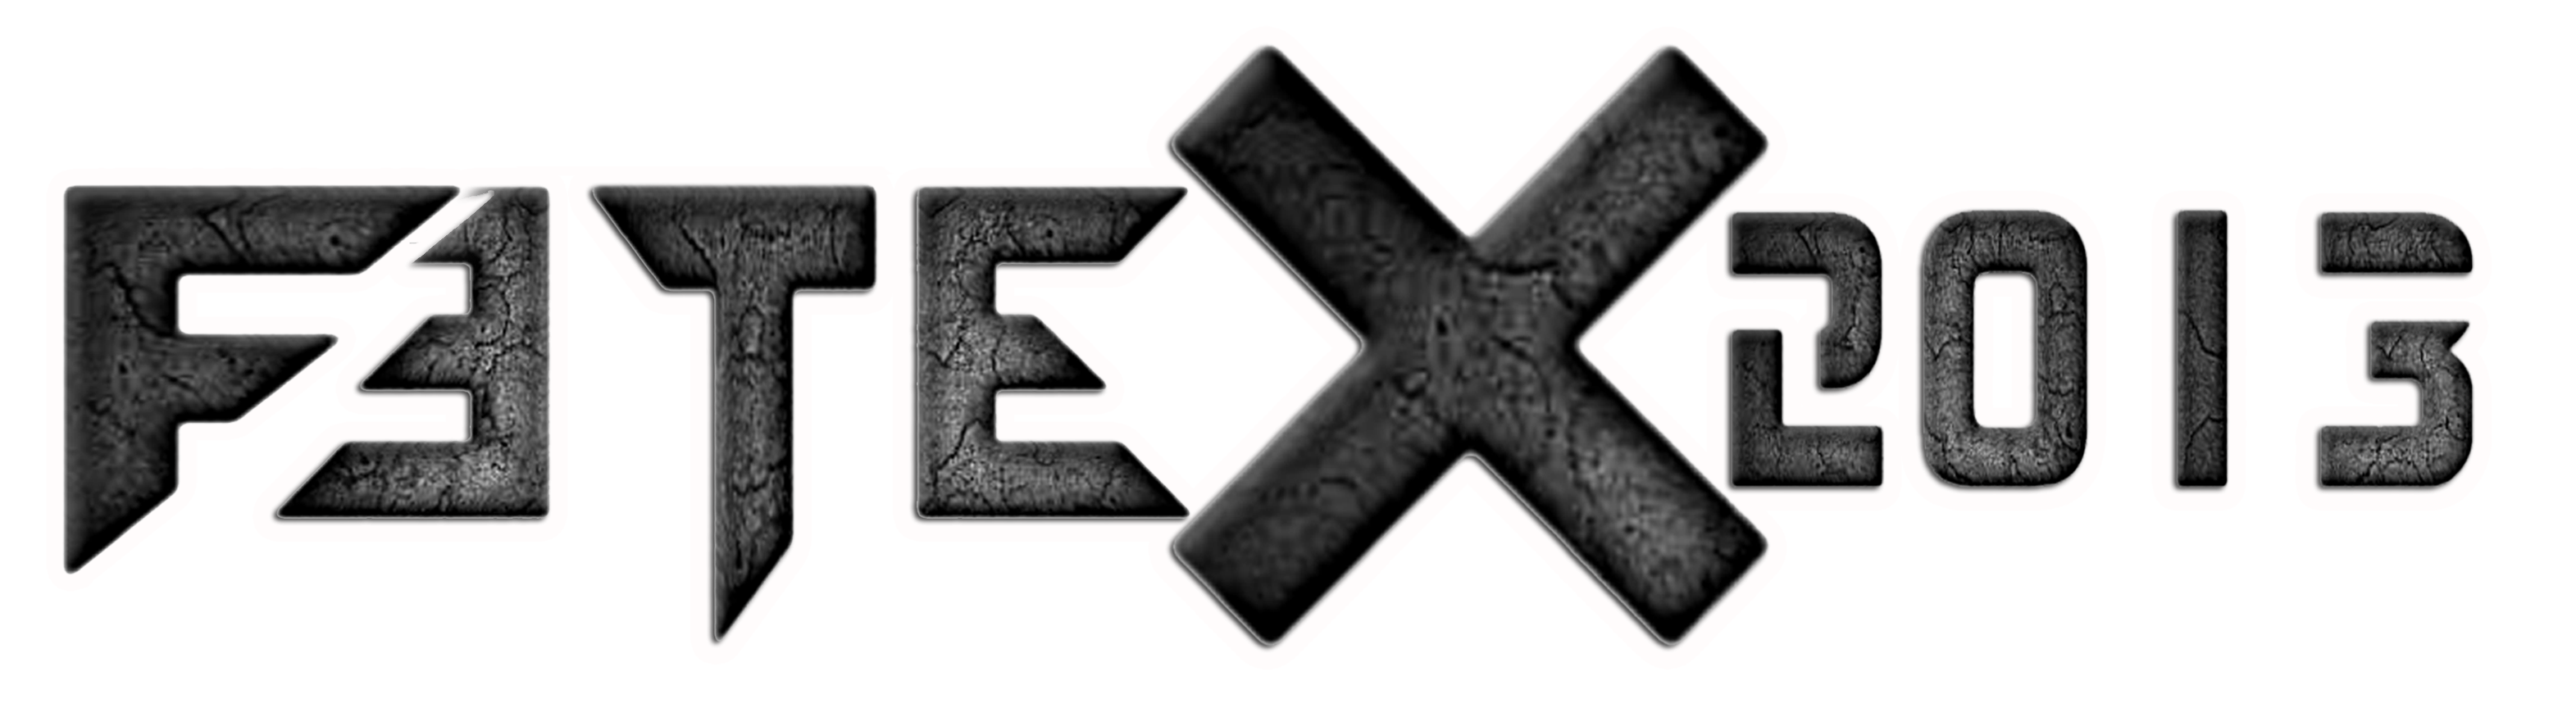 Fetex 2013